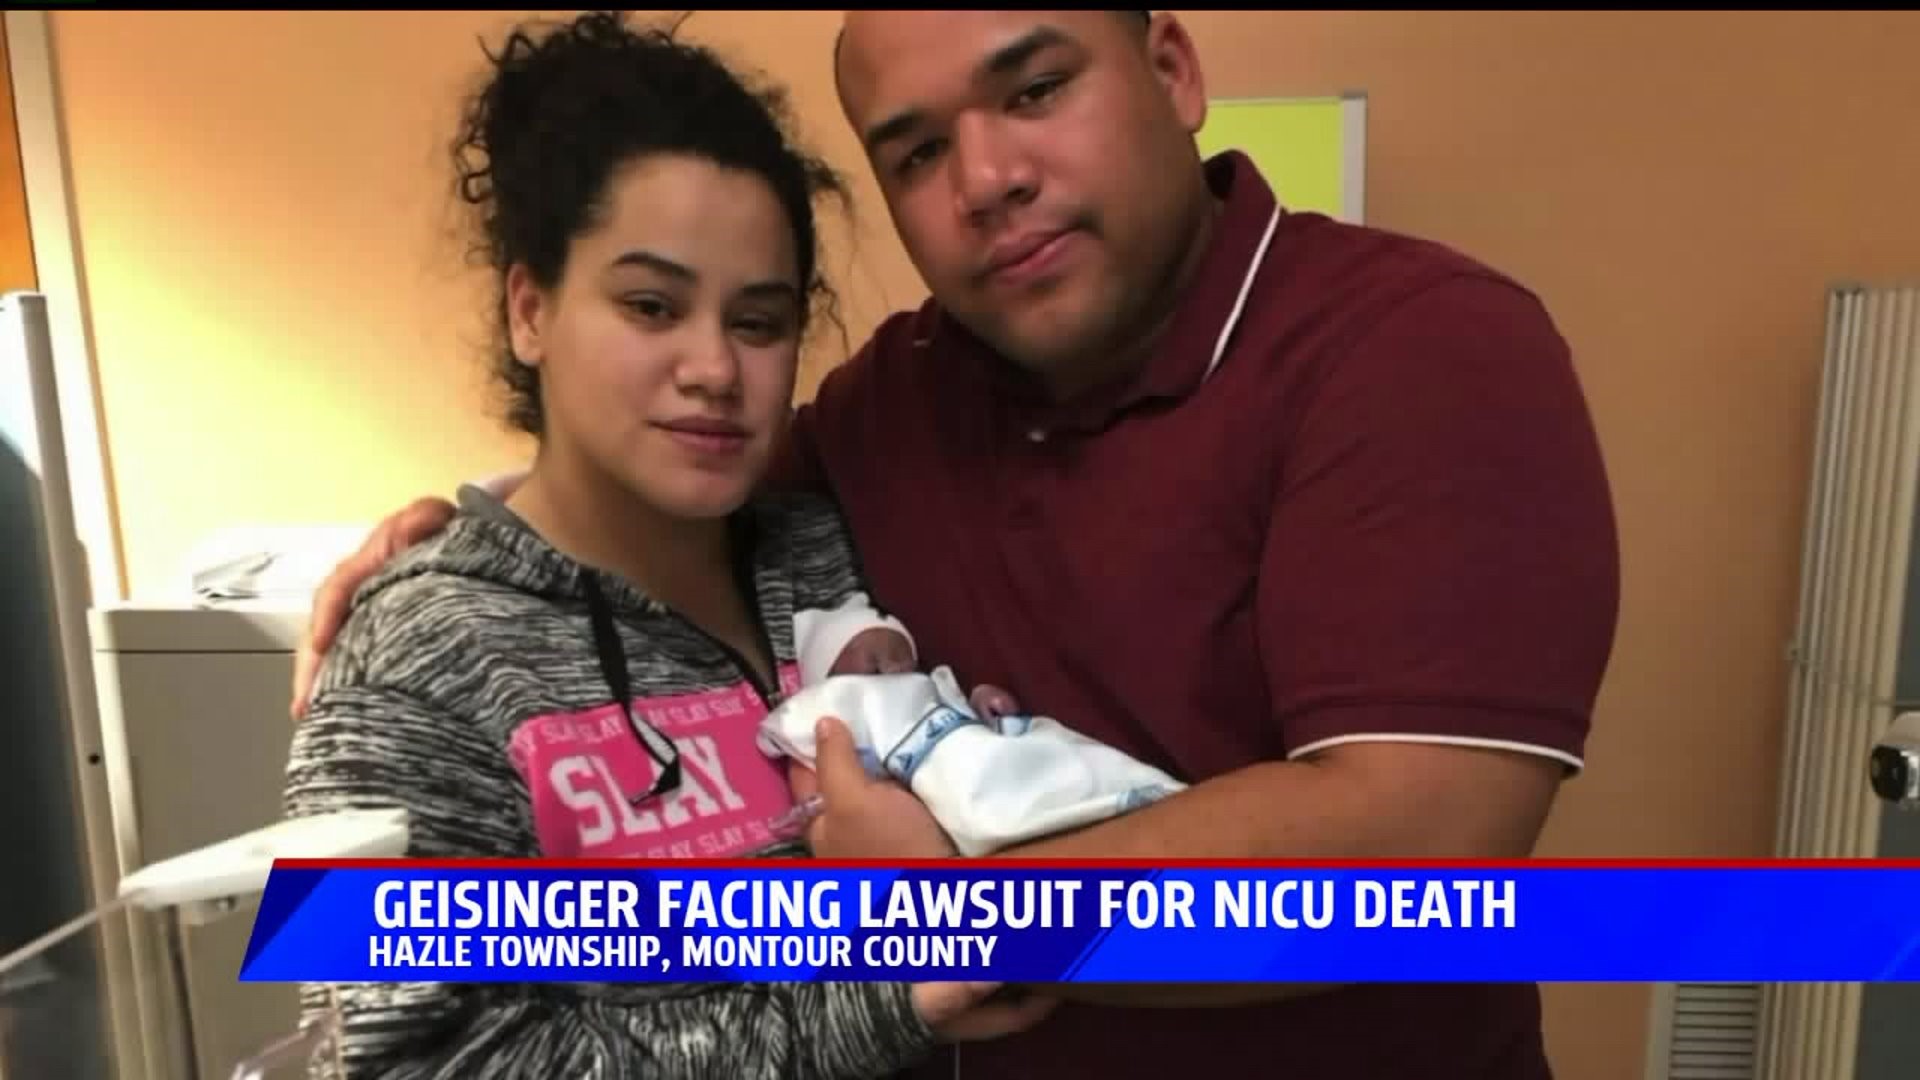 Lawsuit against hospital on NICU deaths